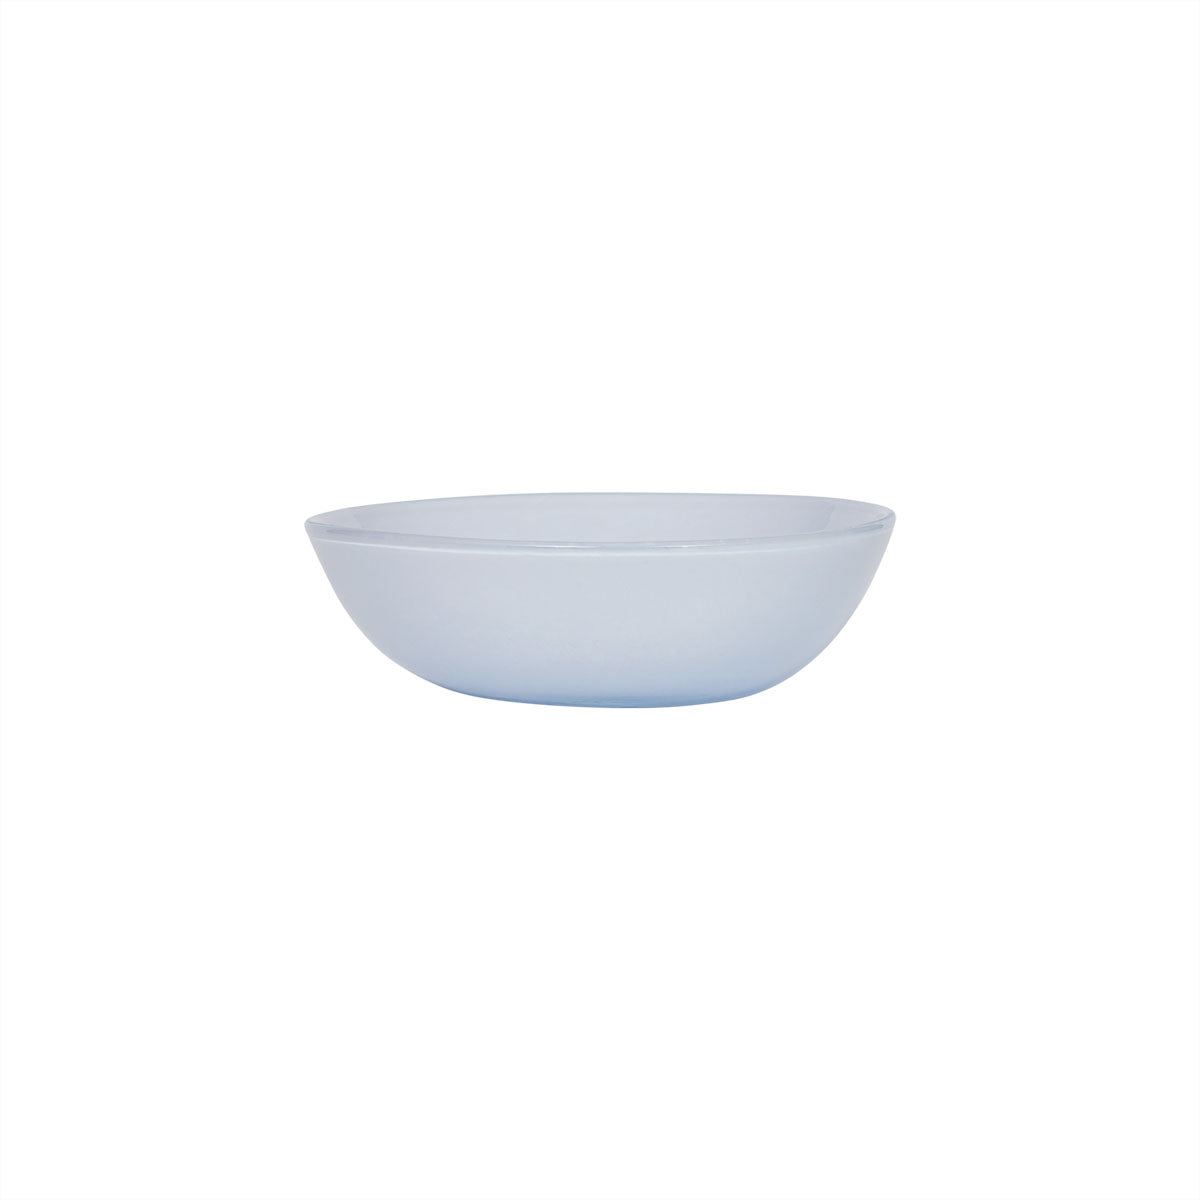 OYOY LIVING Kojo Bowl - Small Bowl 501 Lavender